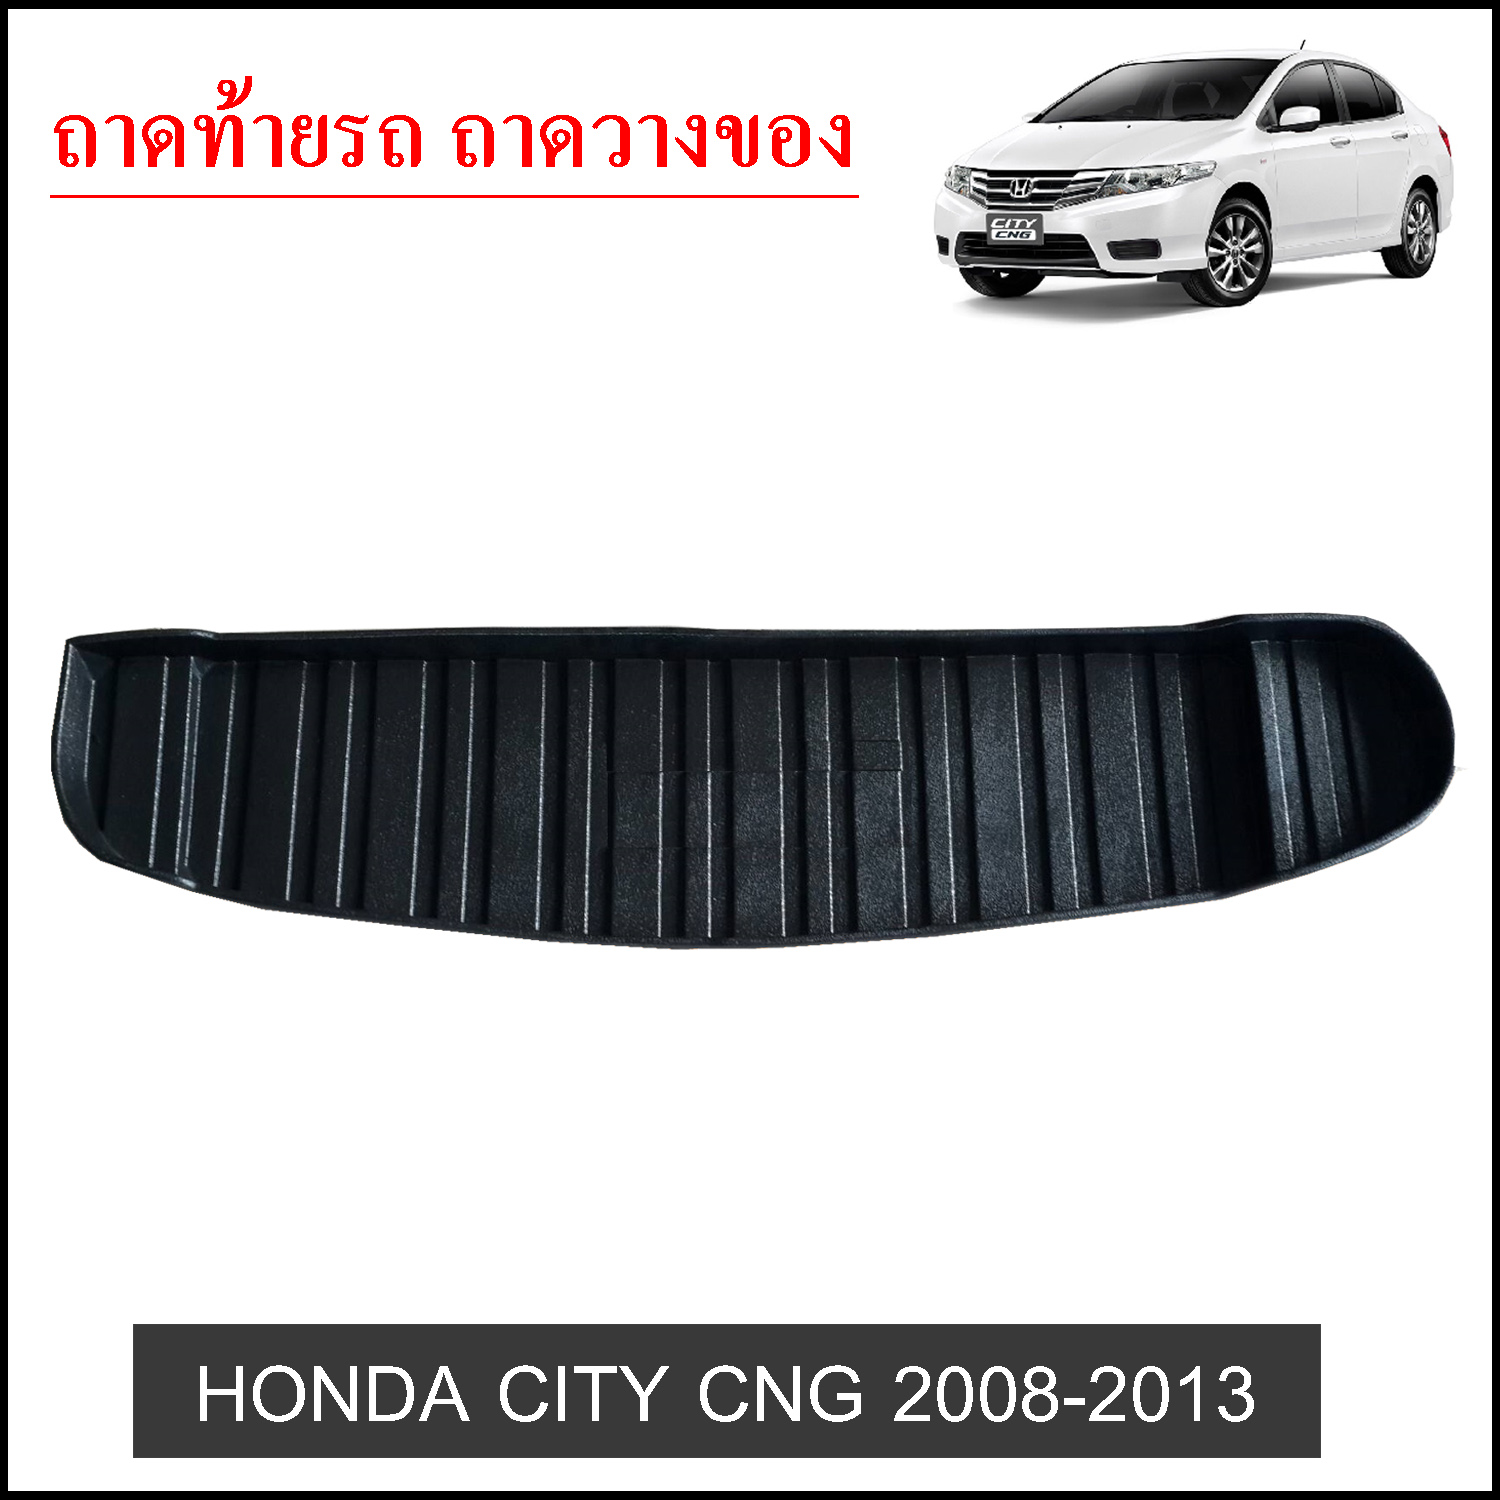 Honda City 2008-2013 CNG